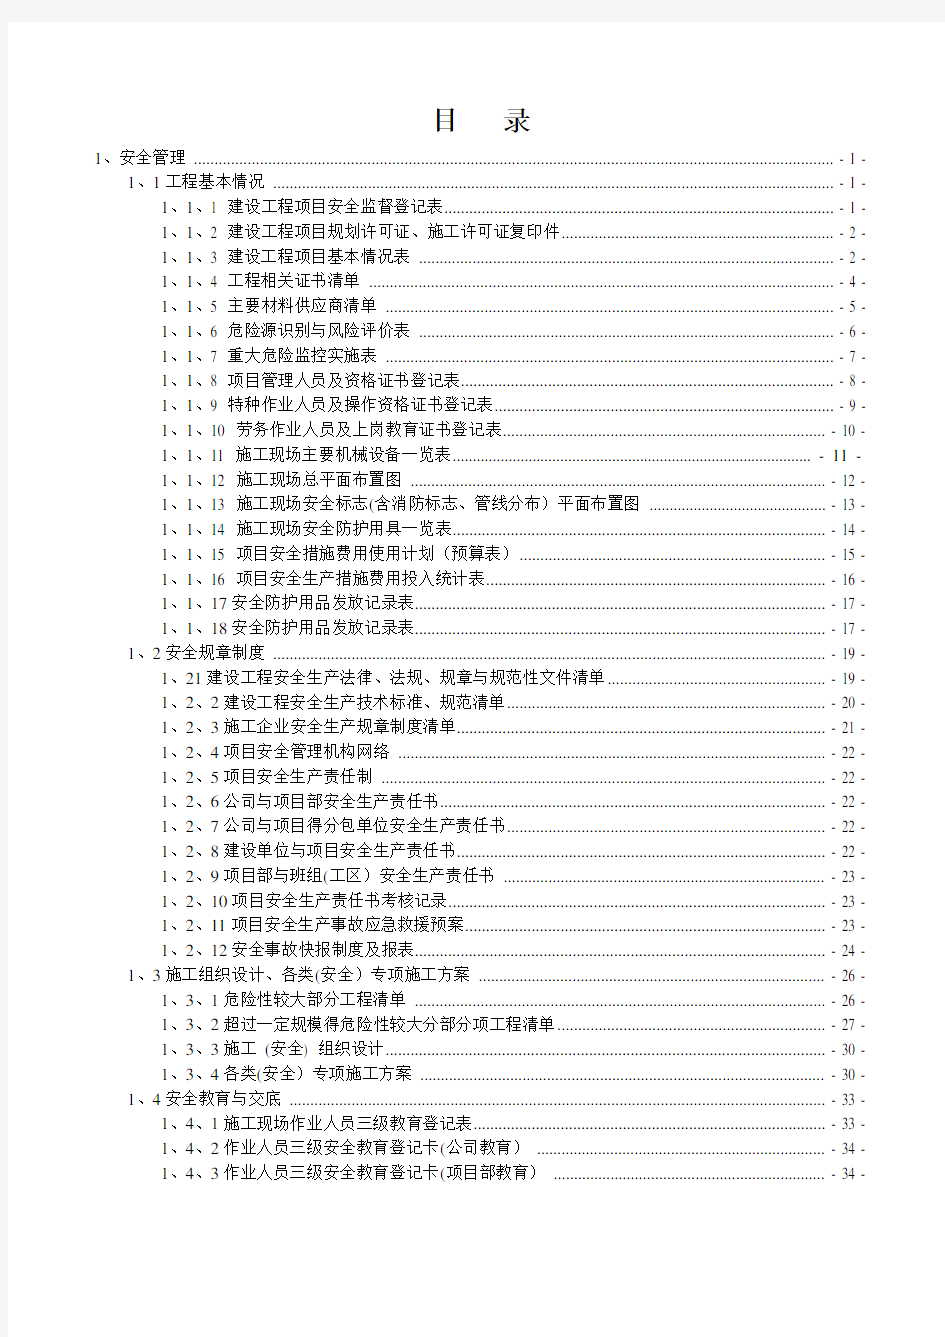 浙江省市政工程安全台账(2017版完整)